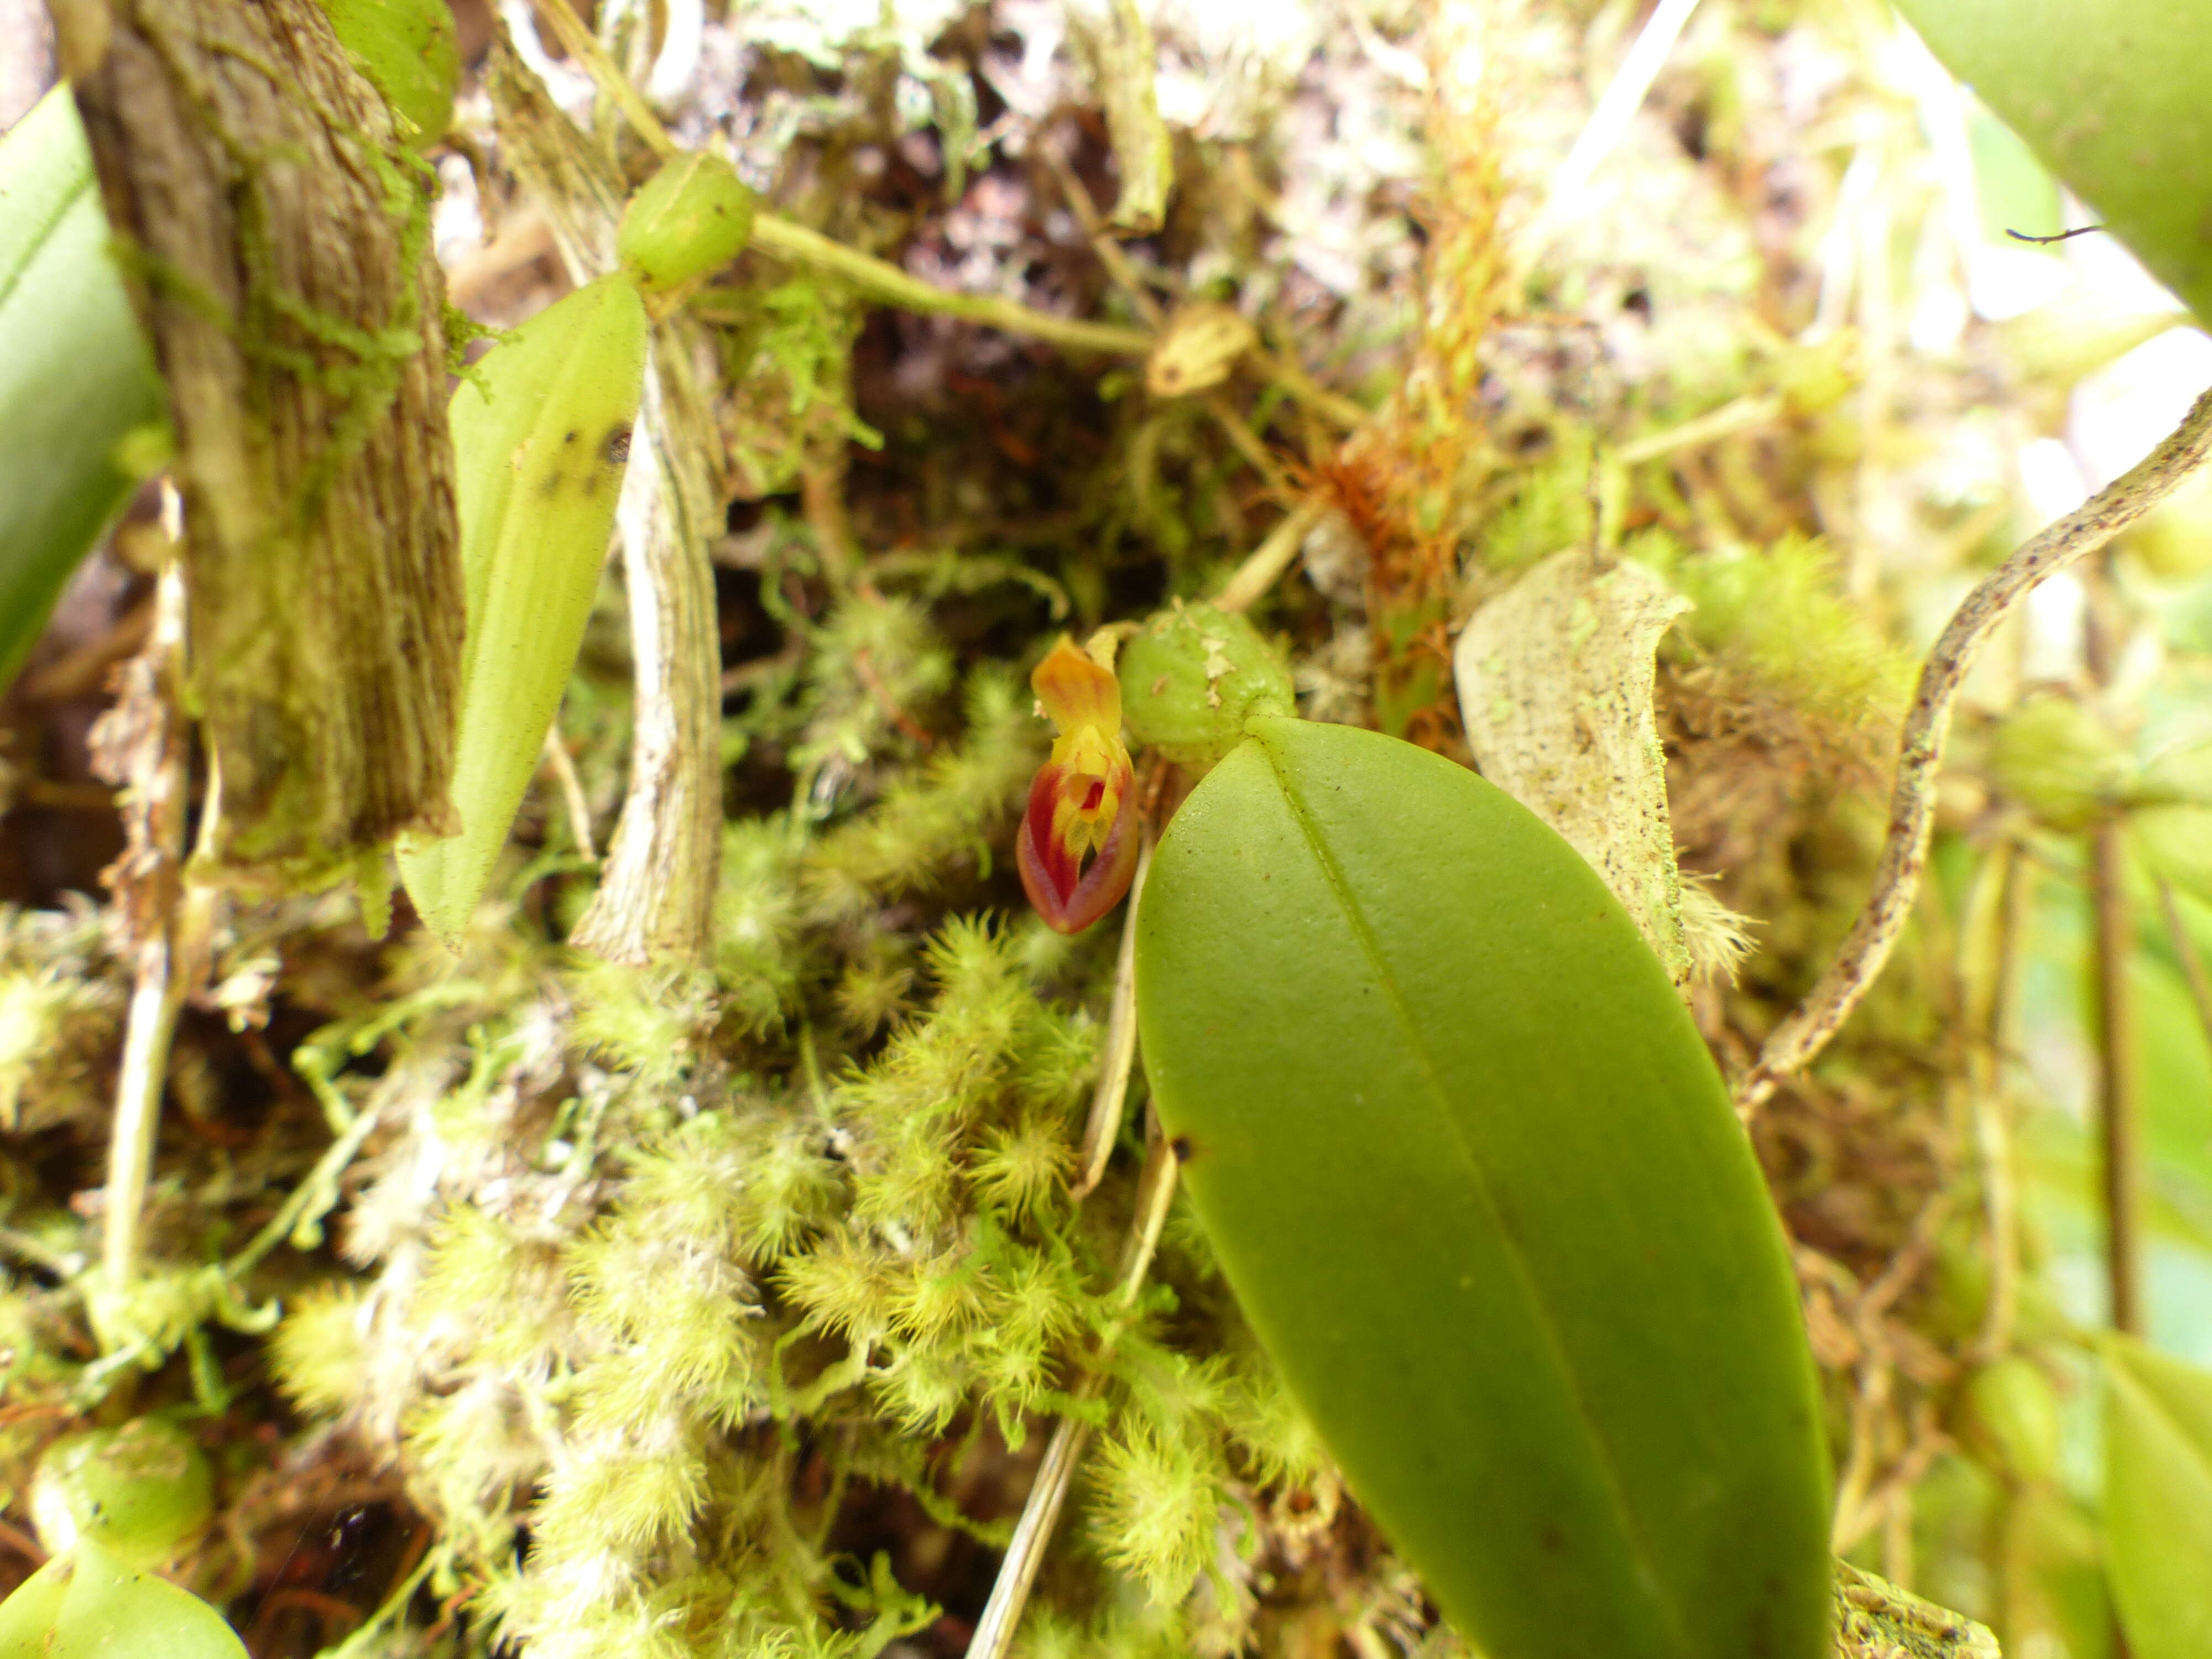 Image de Bulbophyllum membranaceum Teijsm. & Binn.